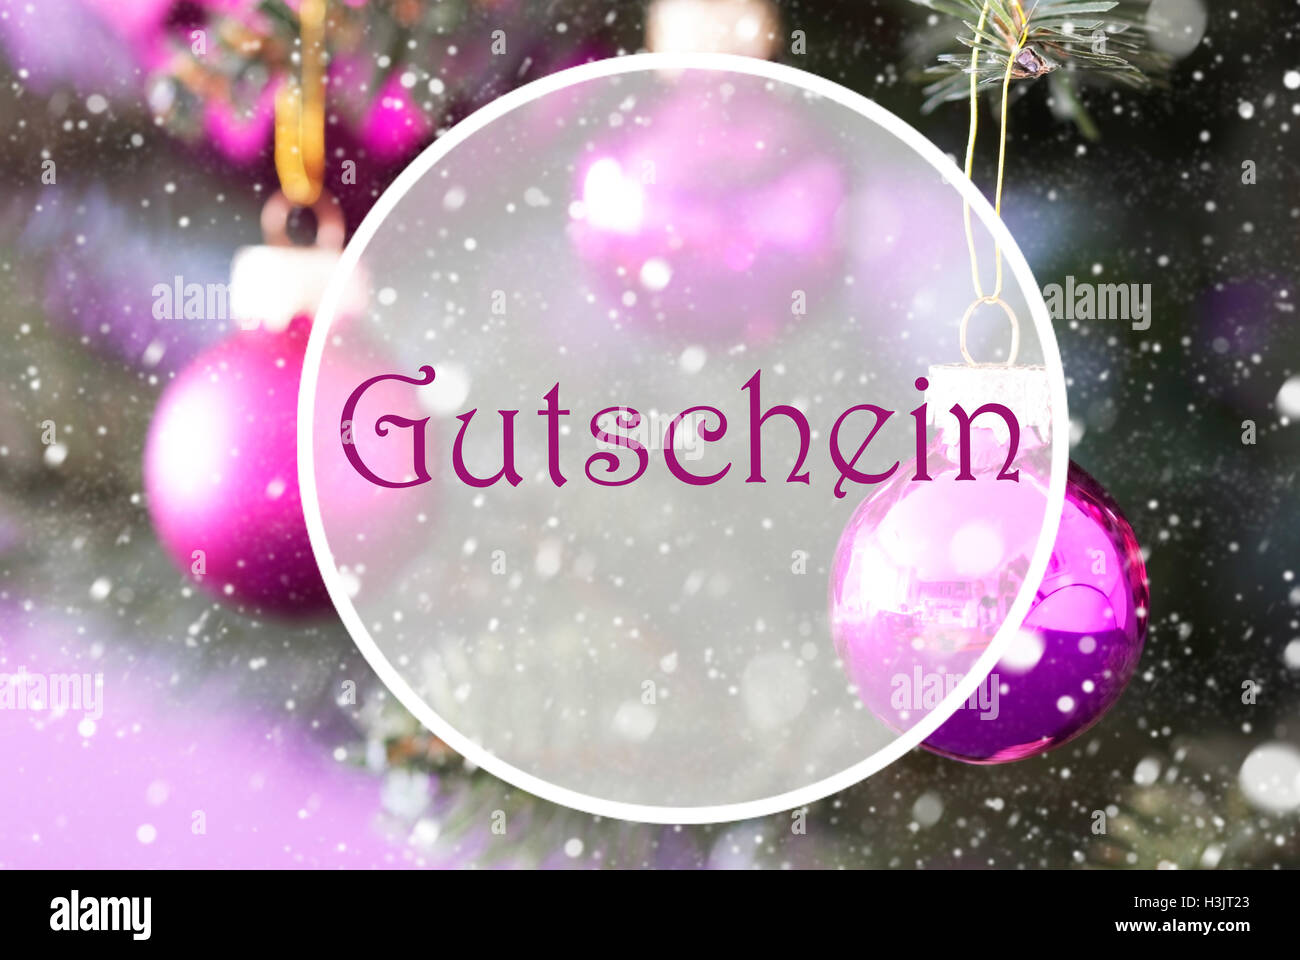 Rose Quartz Christmas Balls, Gutschein Means Voucher Stock Photo